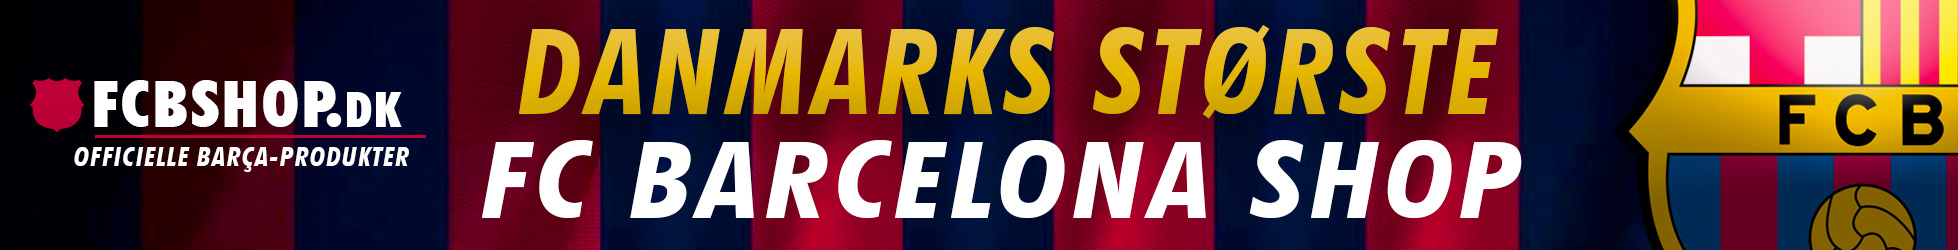 FCBSHOP.dk - FC Barcelona trøjer og merchandise